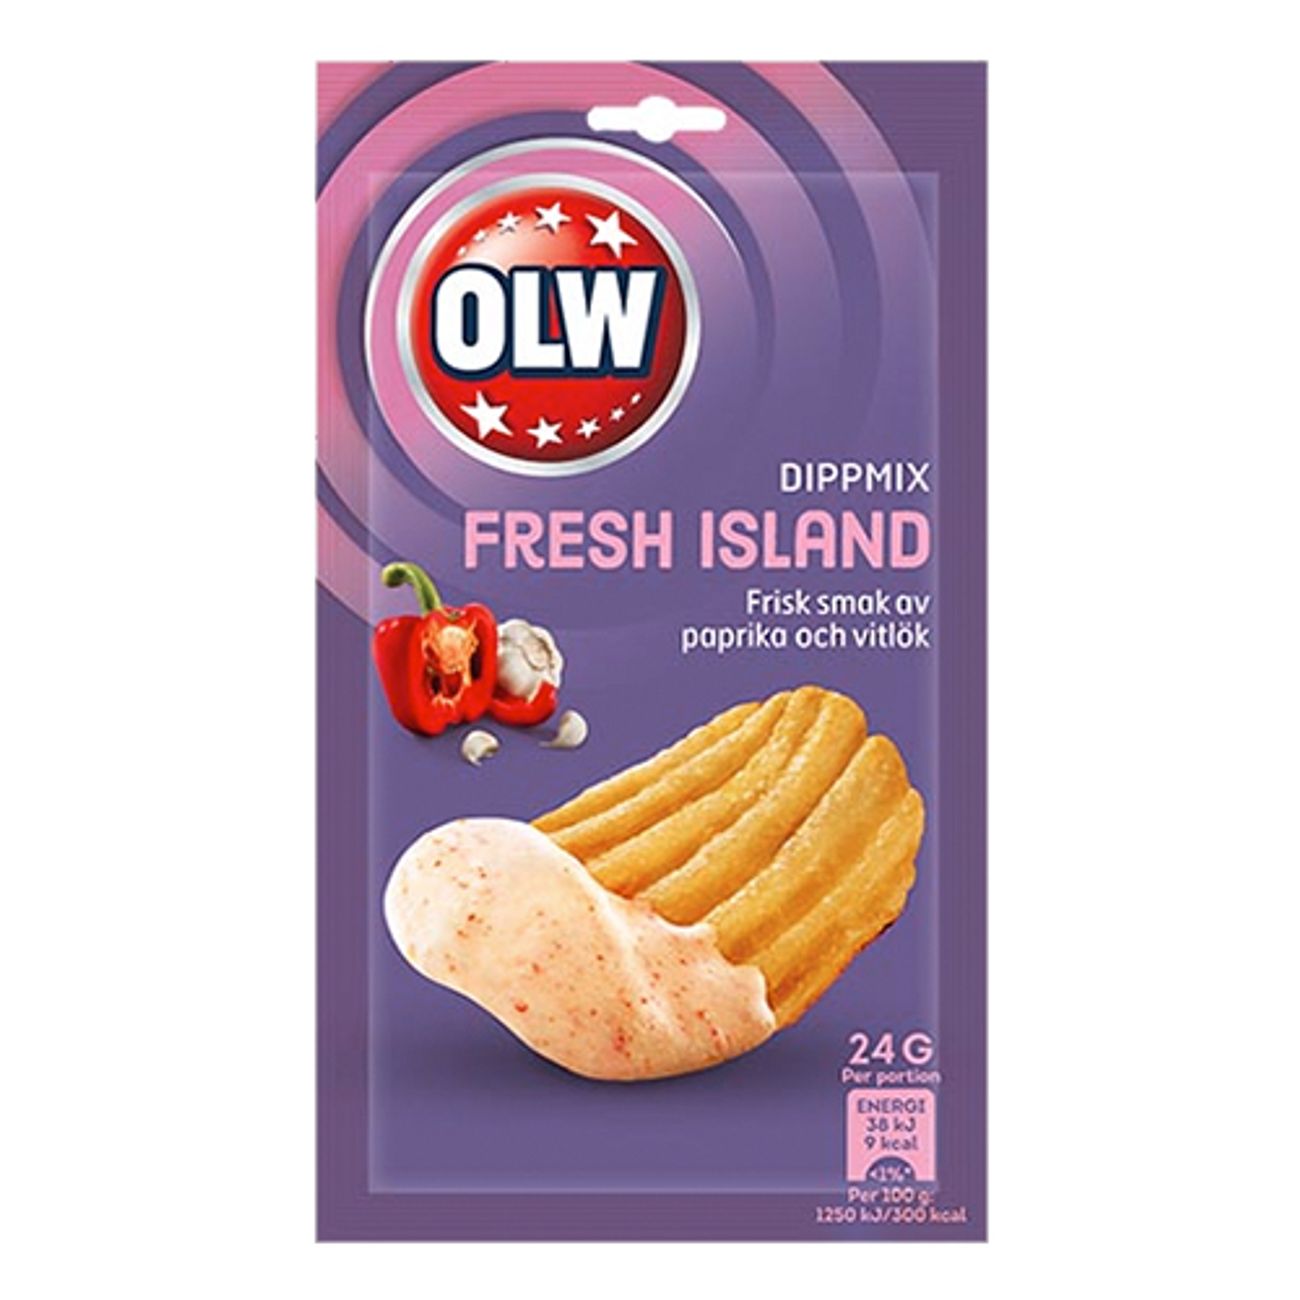 olw-dipmix-fresh-island2-1